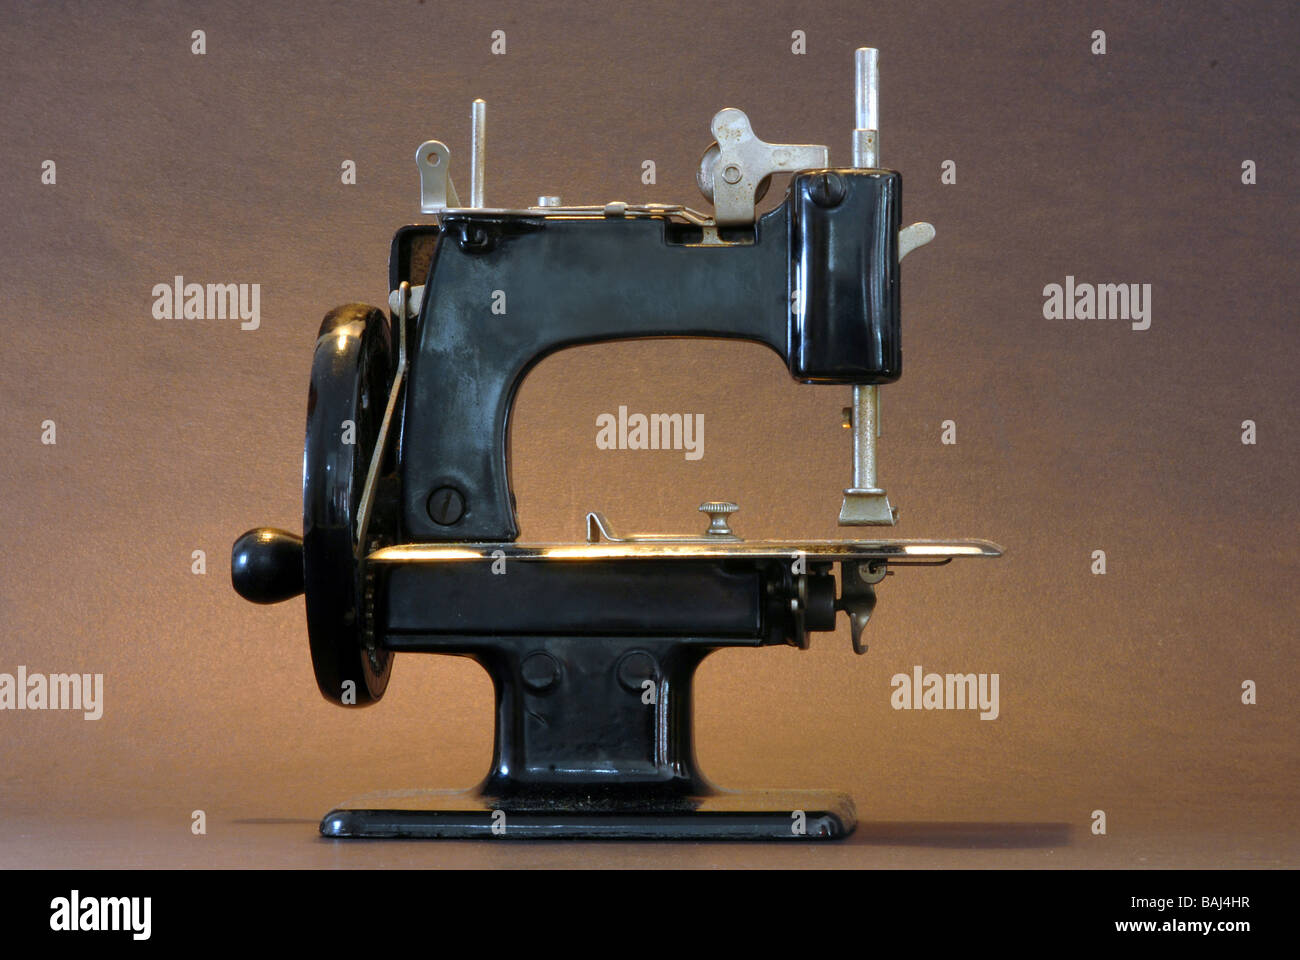 Une machine à coudre vintage sur un fond noir Banque D'Images